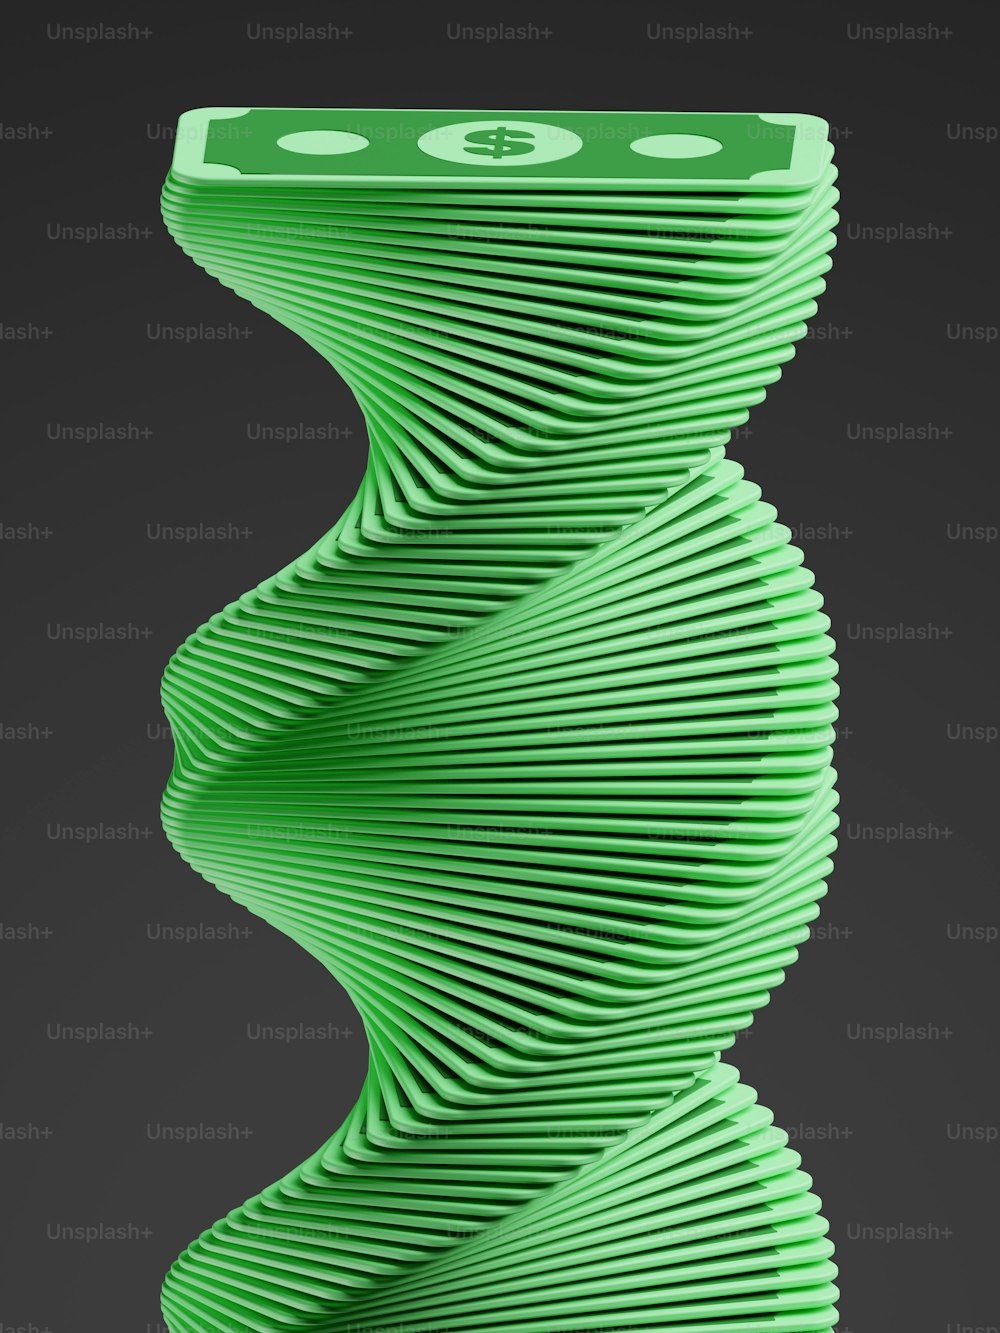 um objeto verde que se parece com uma espiral